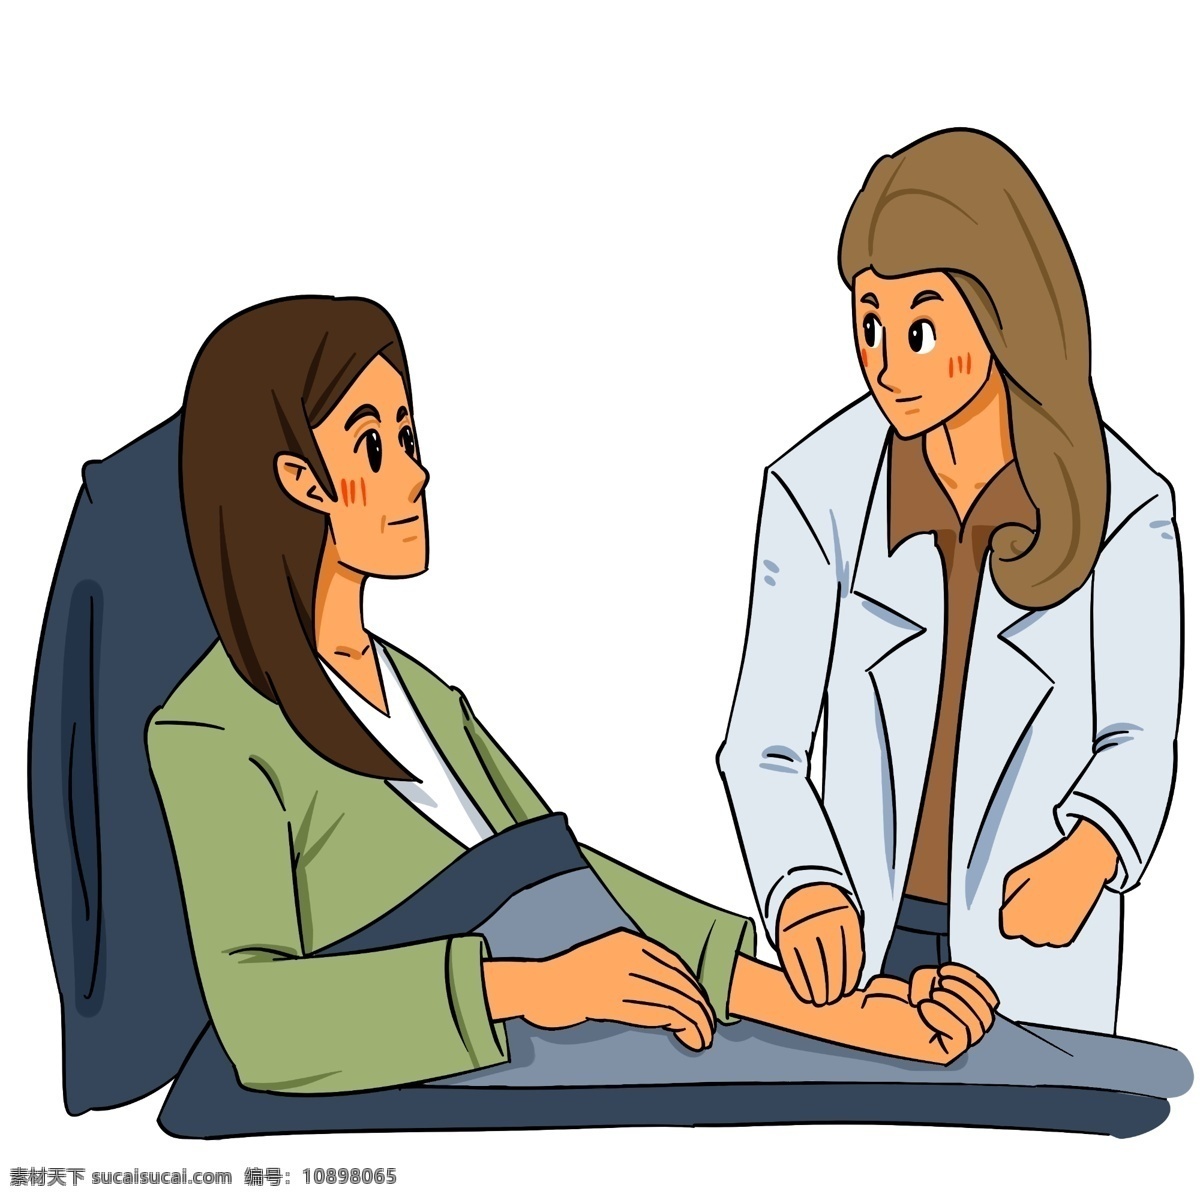 手绘 医生 诊脉 检查 插画 医疗 手绘人物 病床 医院 坐着的病人 病人插图